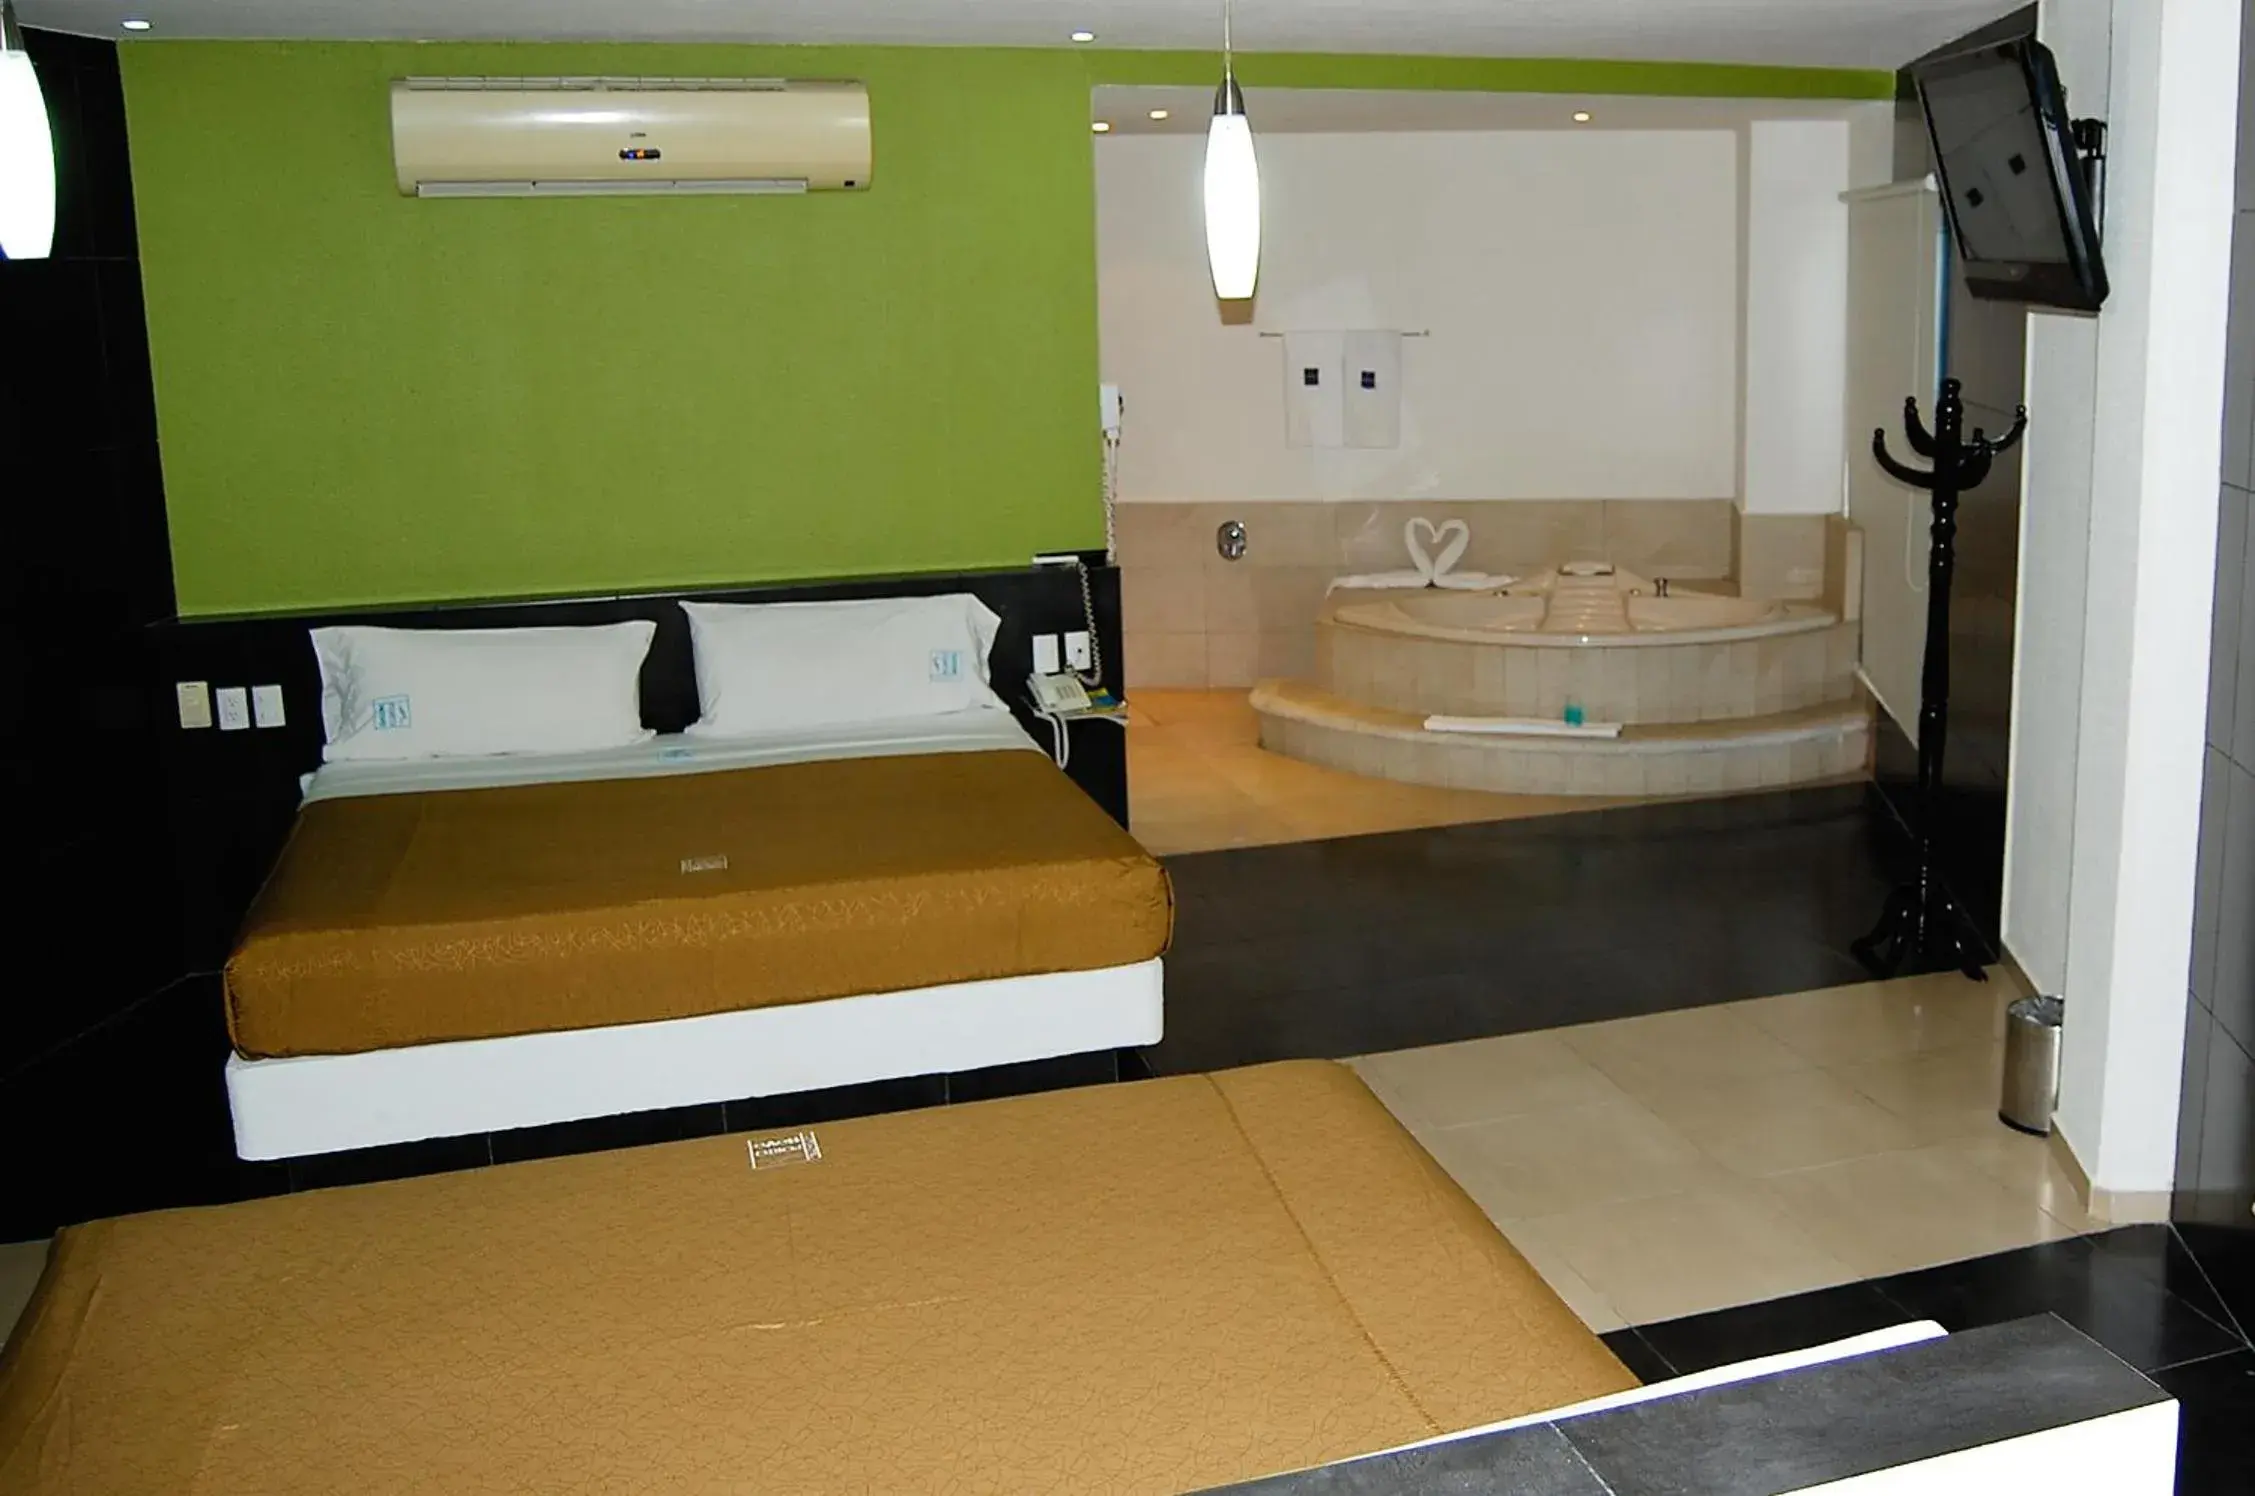 Bed in Hotel Porto Novo